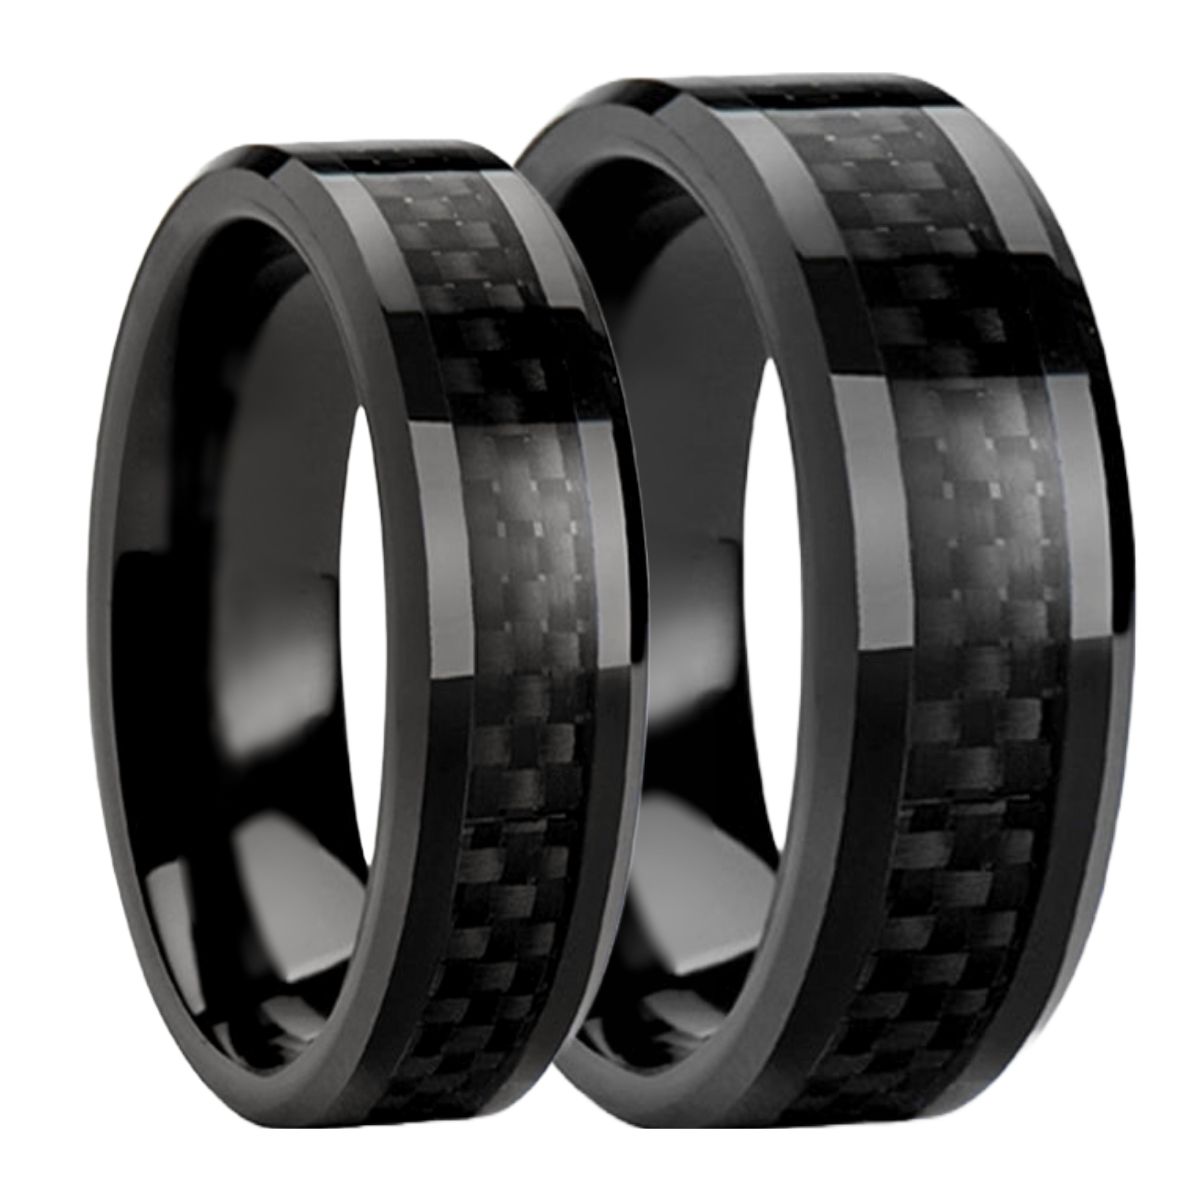 Juego de alianzas de boda a juego para parejas de titanio negro con incrustaciones de fibra de carbono negro